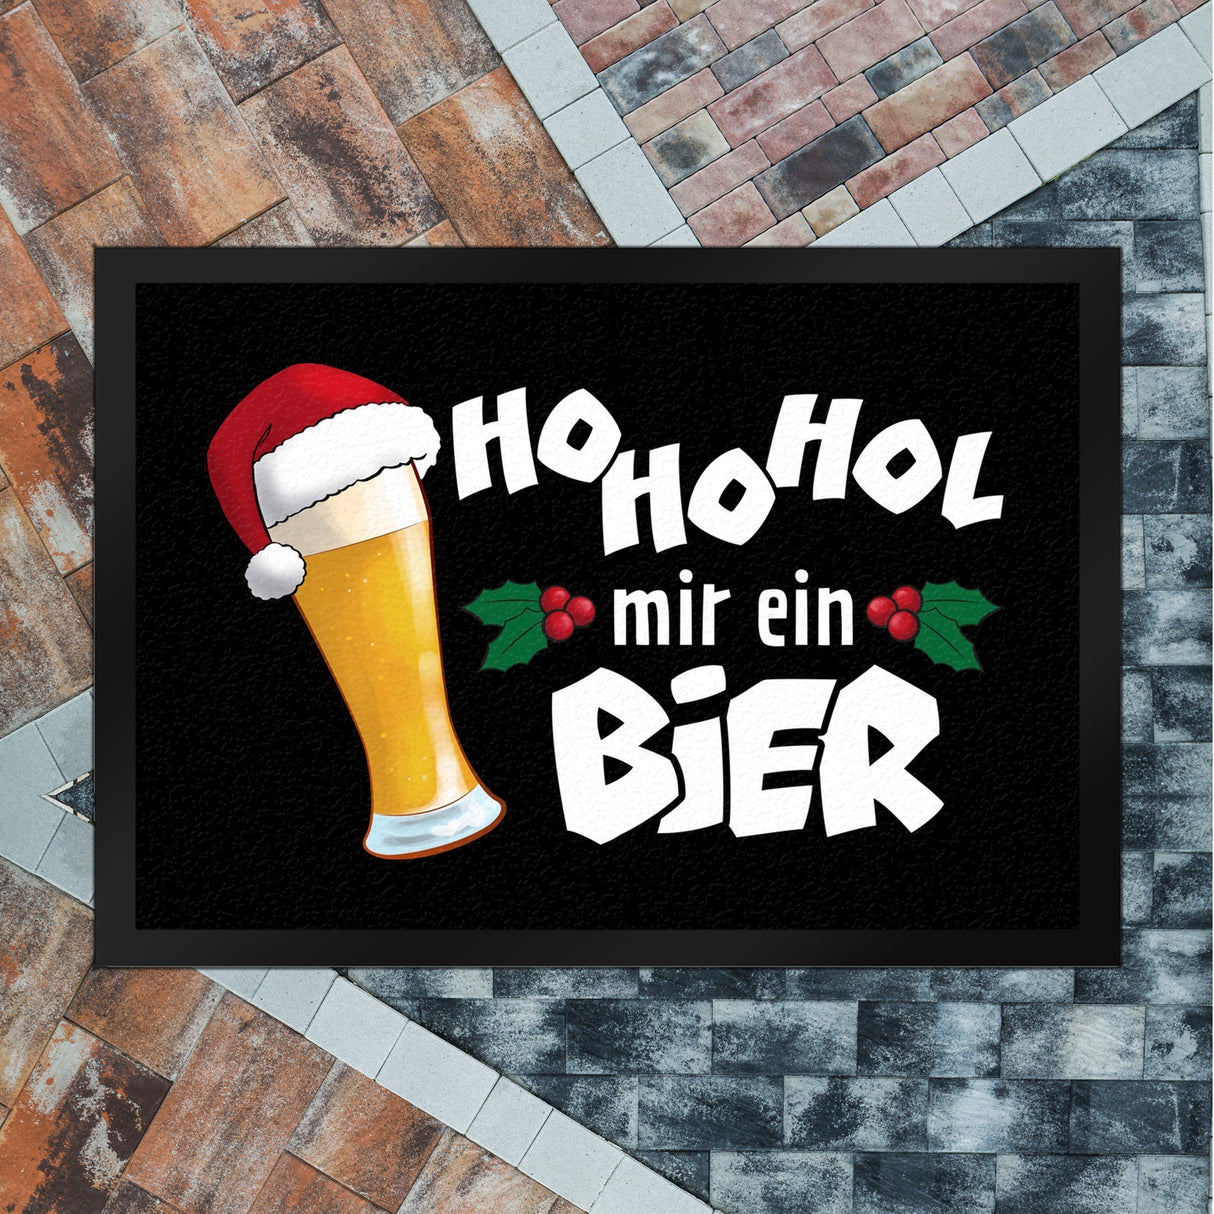 Bier mit Weihnachtsmütze Fußmatte in 35x50 cm mit Spruch HoHoHol mir ein Bier